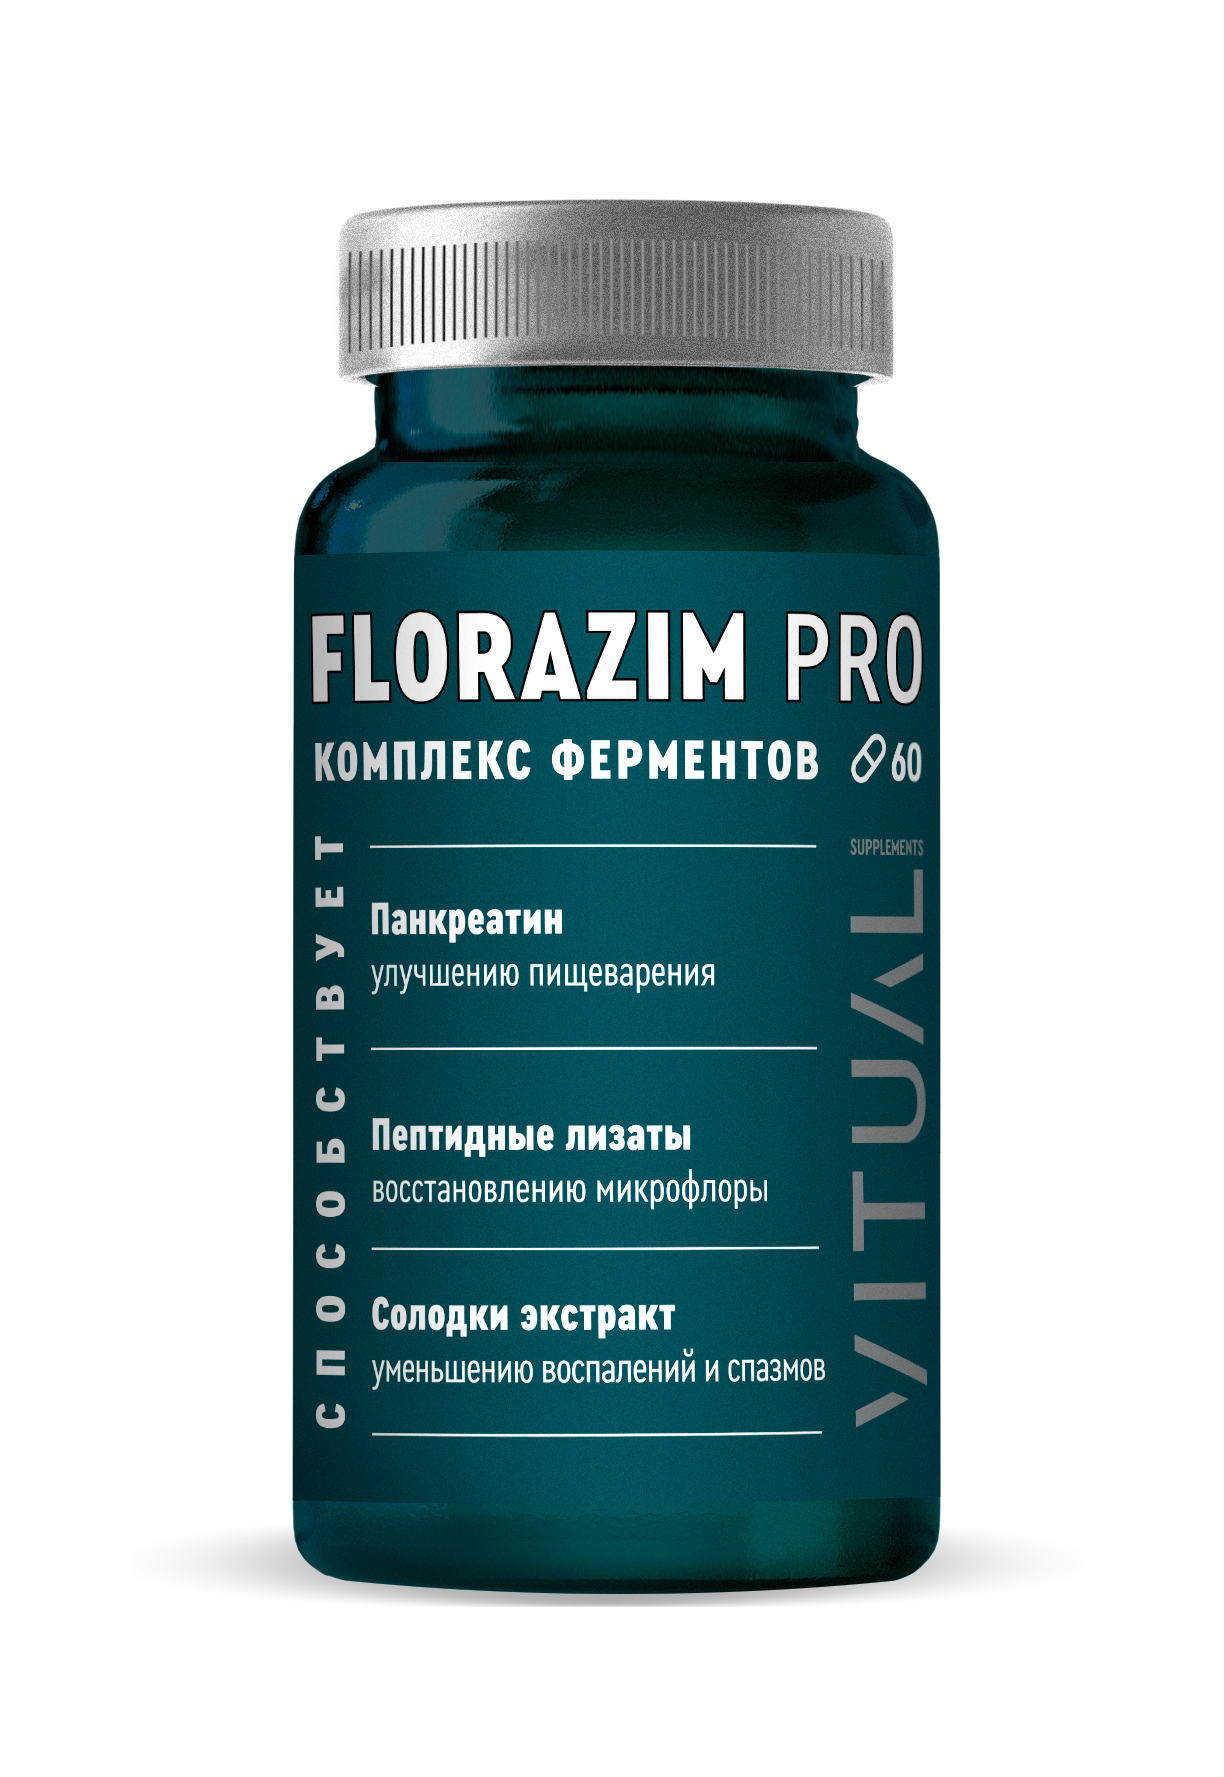 Florazim Pro